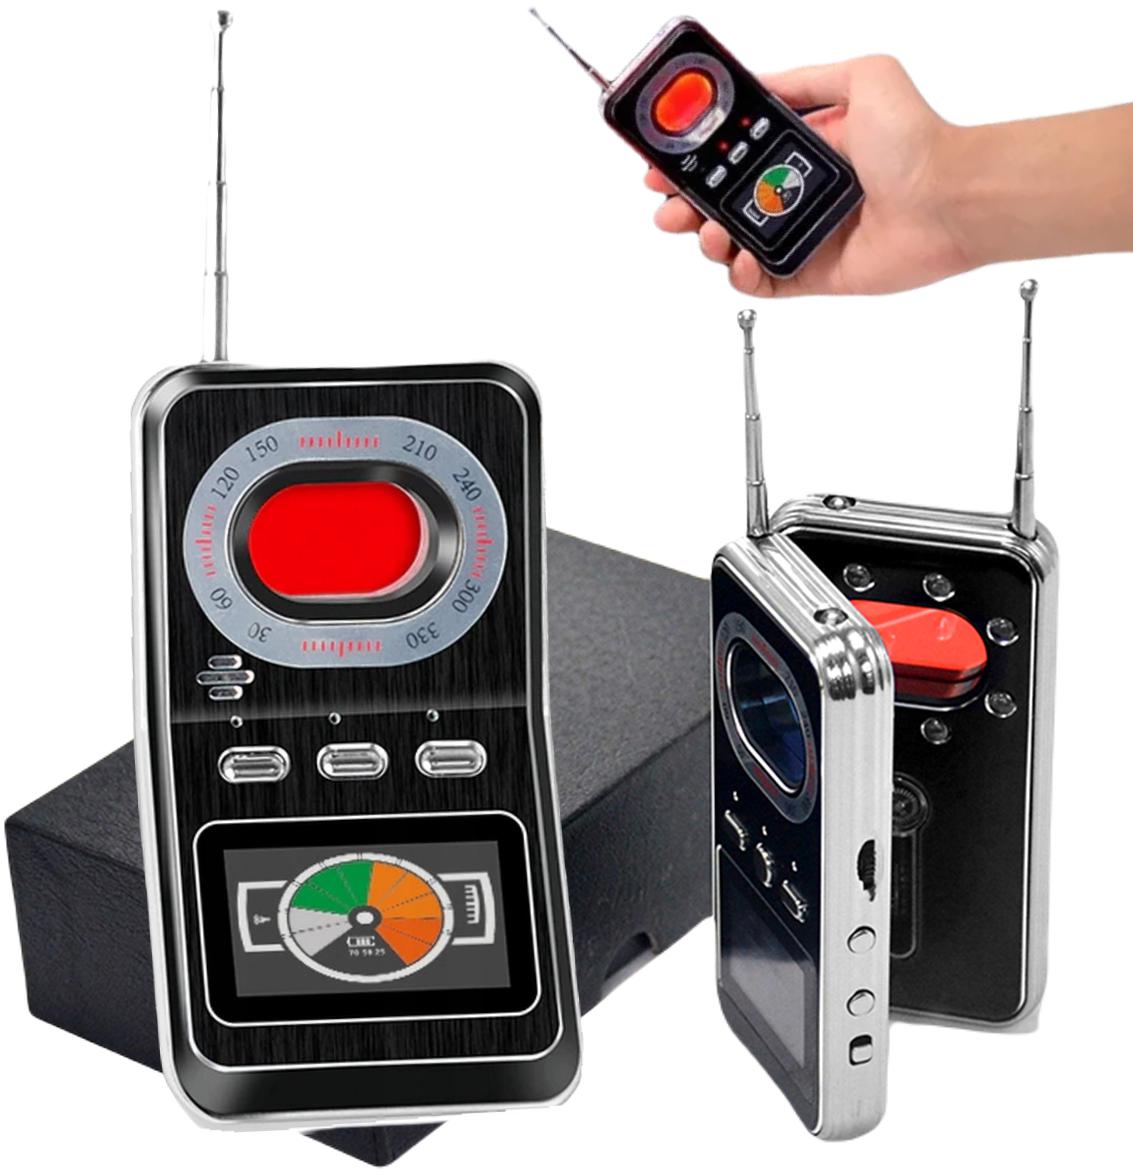 Mking MK800 odpočúvacia kamera GPS lokátor detektor - najdôležitejšie vlastnosti: